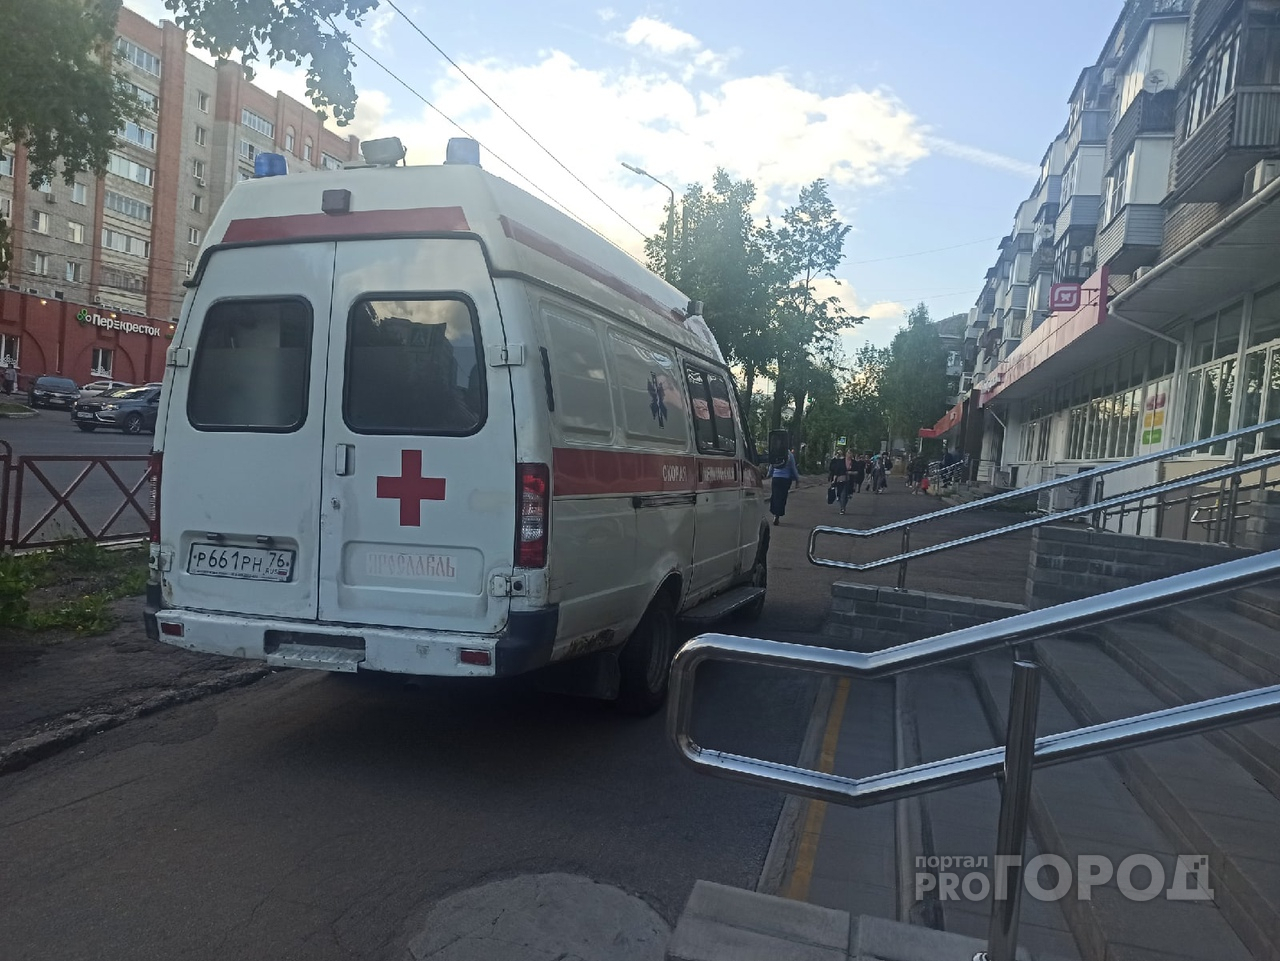 Разбился насмерть: в ДТП в Ярославской области погиб мужчина